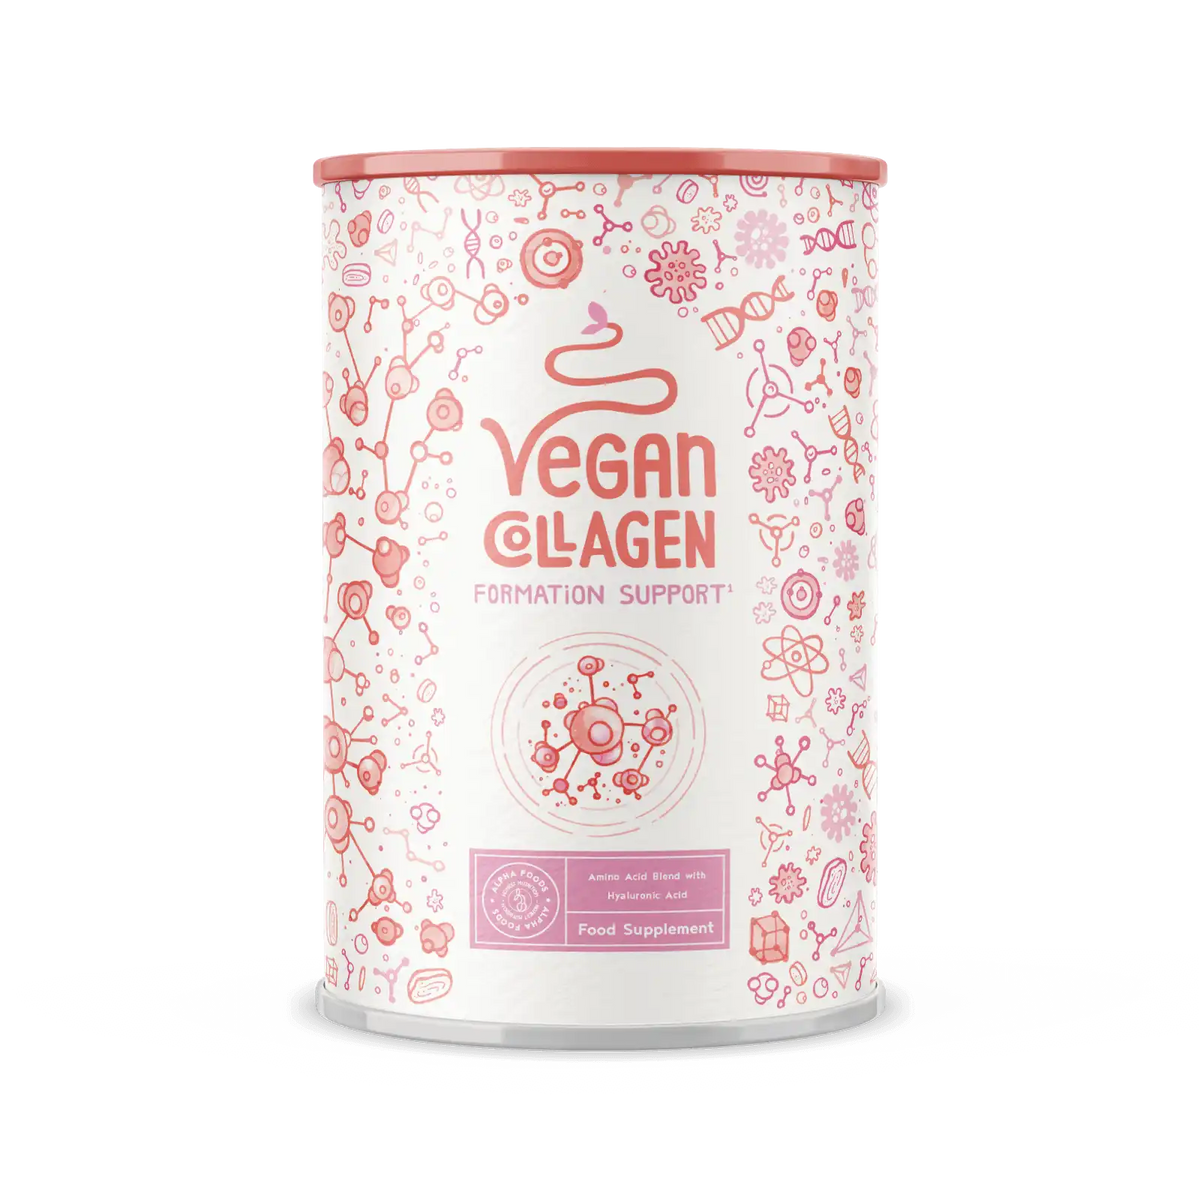 Vegan Collagen Formation Support - Neutral